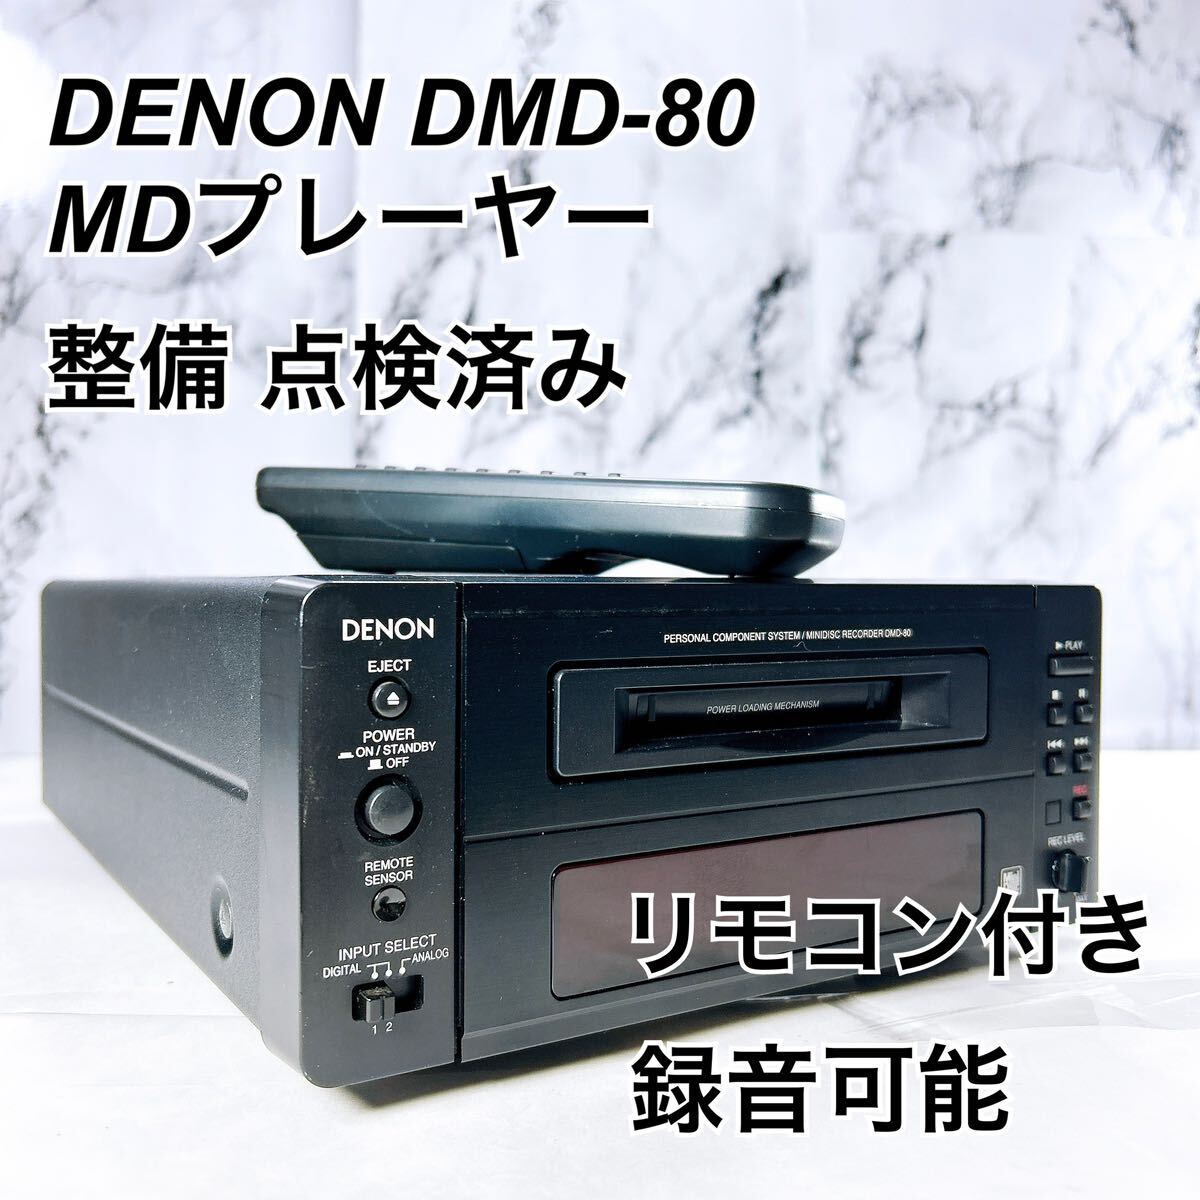 ★メンテナンス済み★ DENON MD レコーダー DMD-80 リモコン付き_画像1